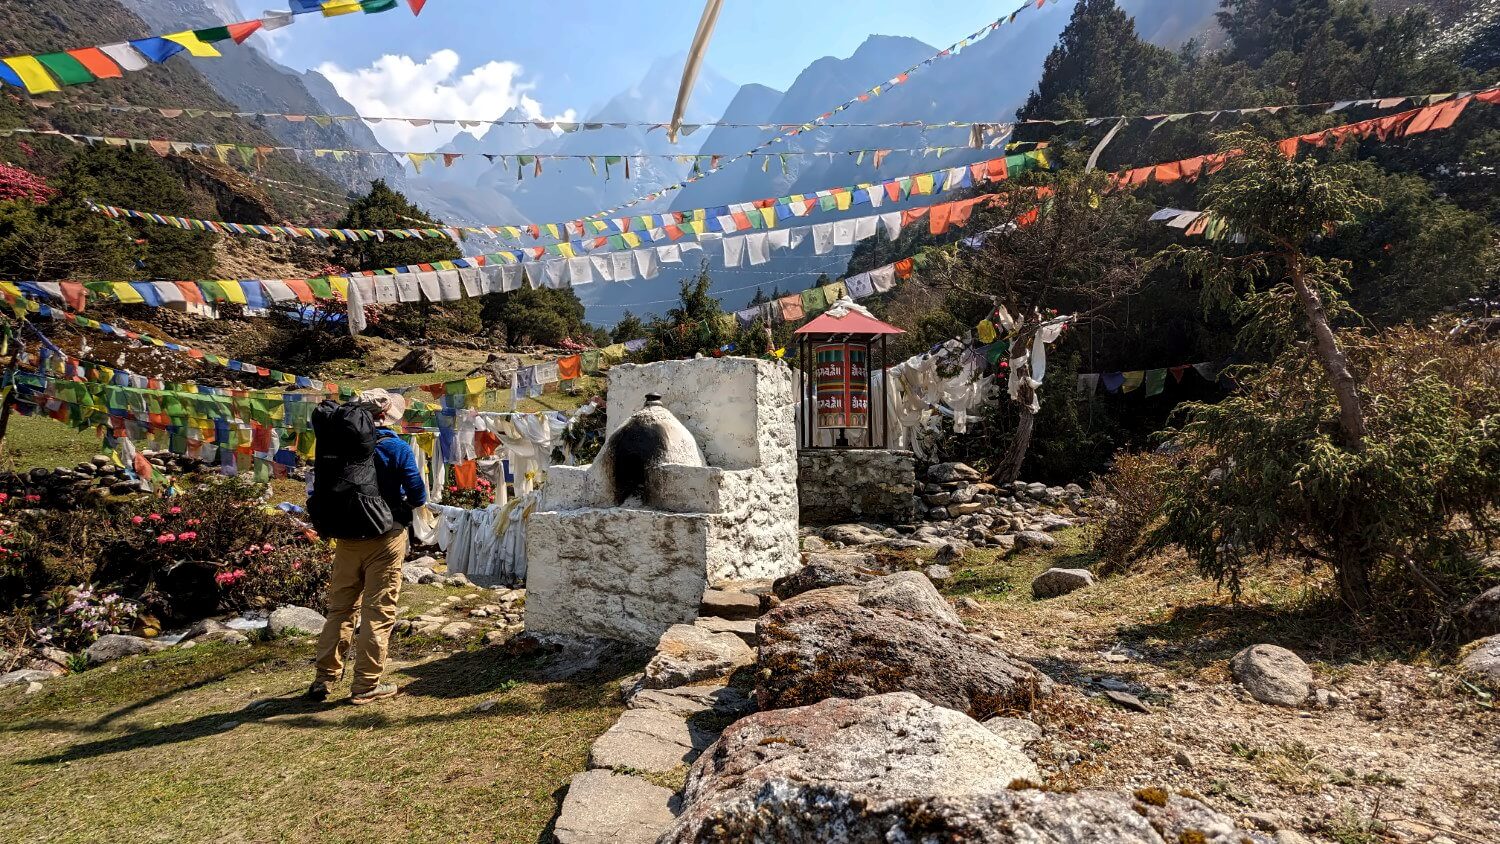 Gebetsfahnen und Berge des Himalaya im Hintergrund.